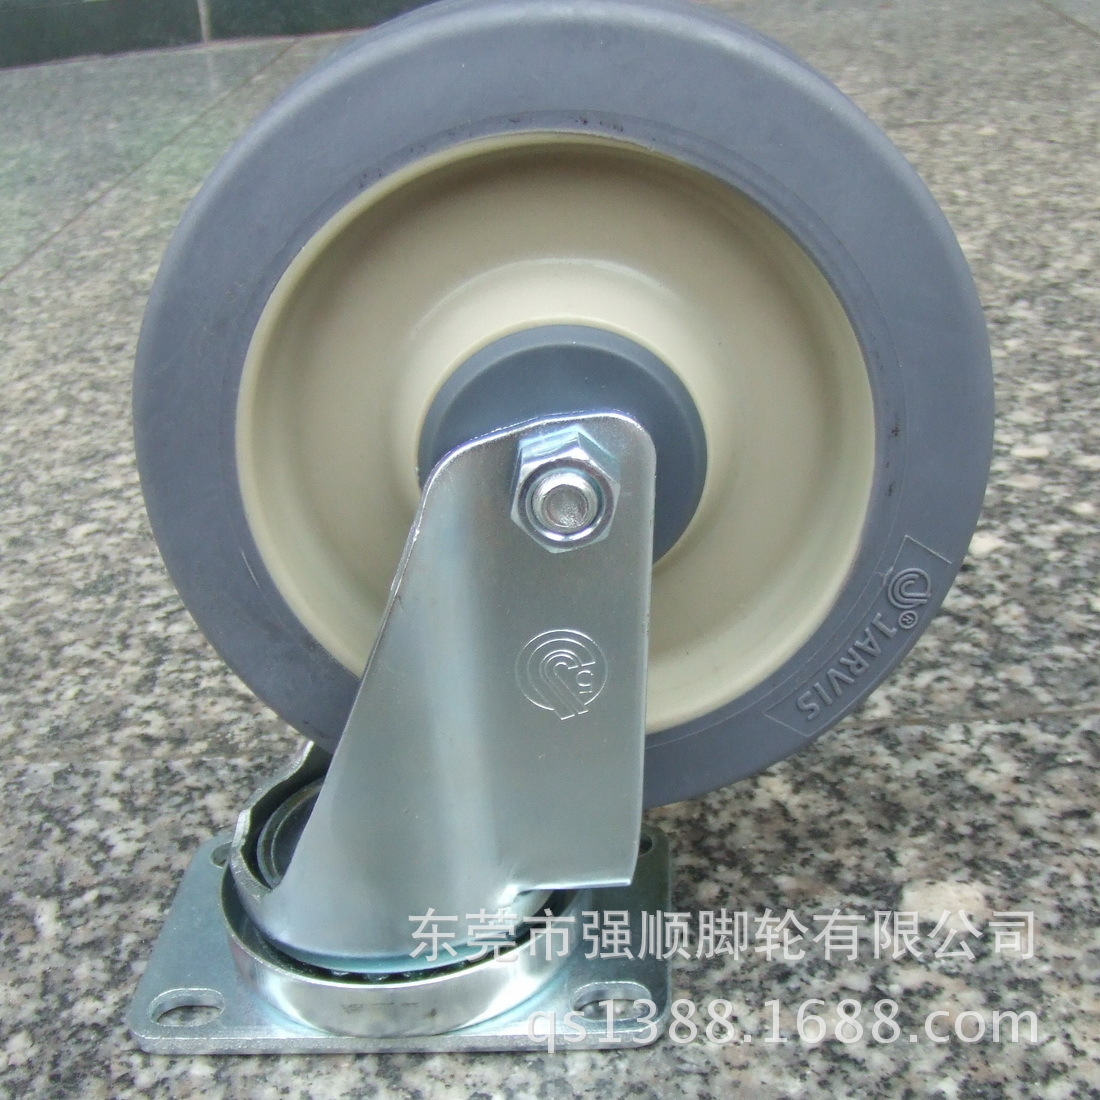 佳威工业脚轮20系列-5寸手推车专用消音人造胶轮万向轮示例图1